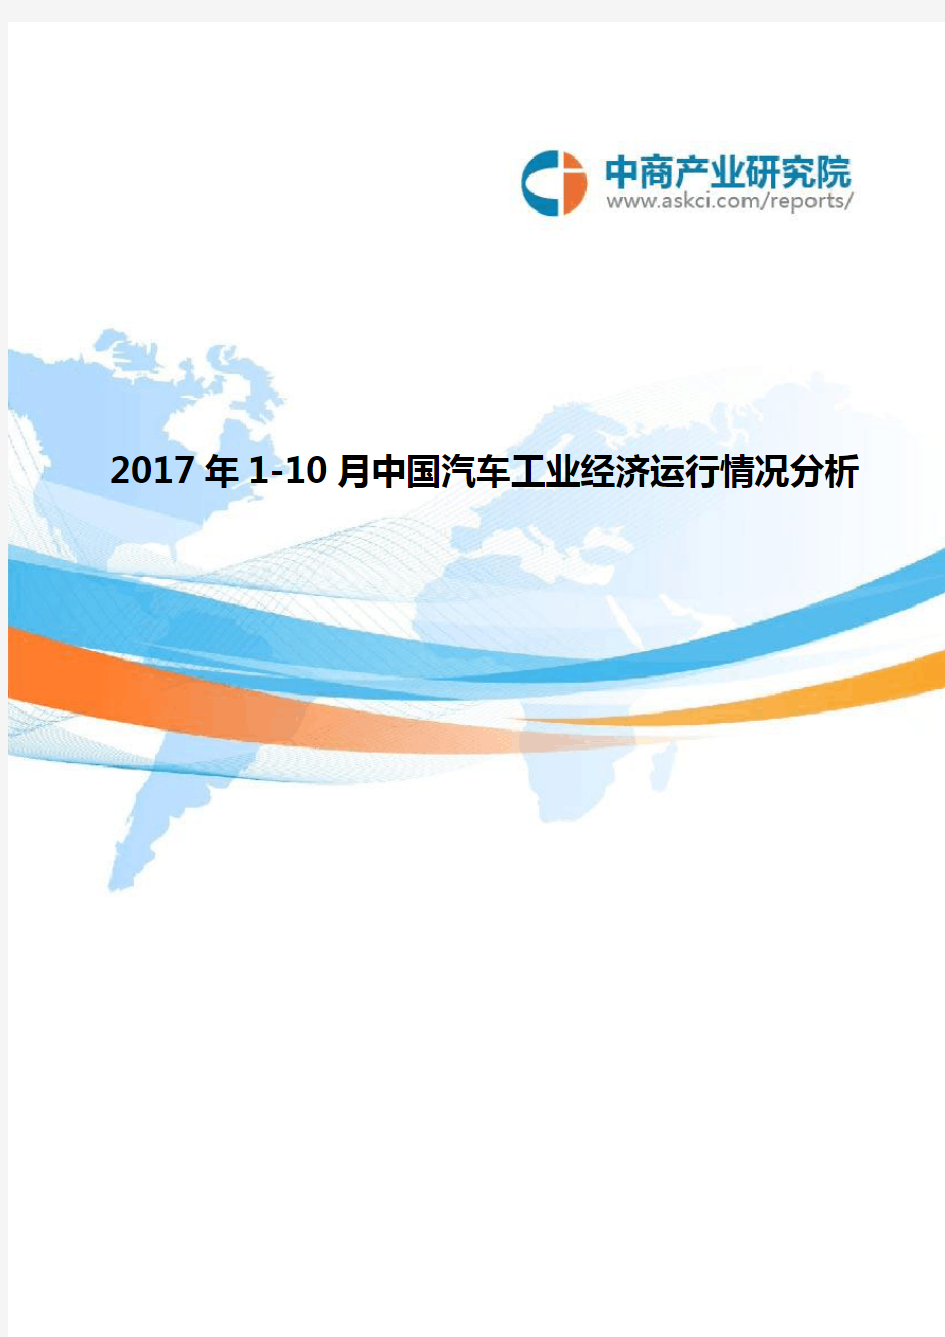 2017年中国汽车工业经济运行情况分析(1-10月)